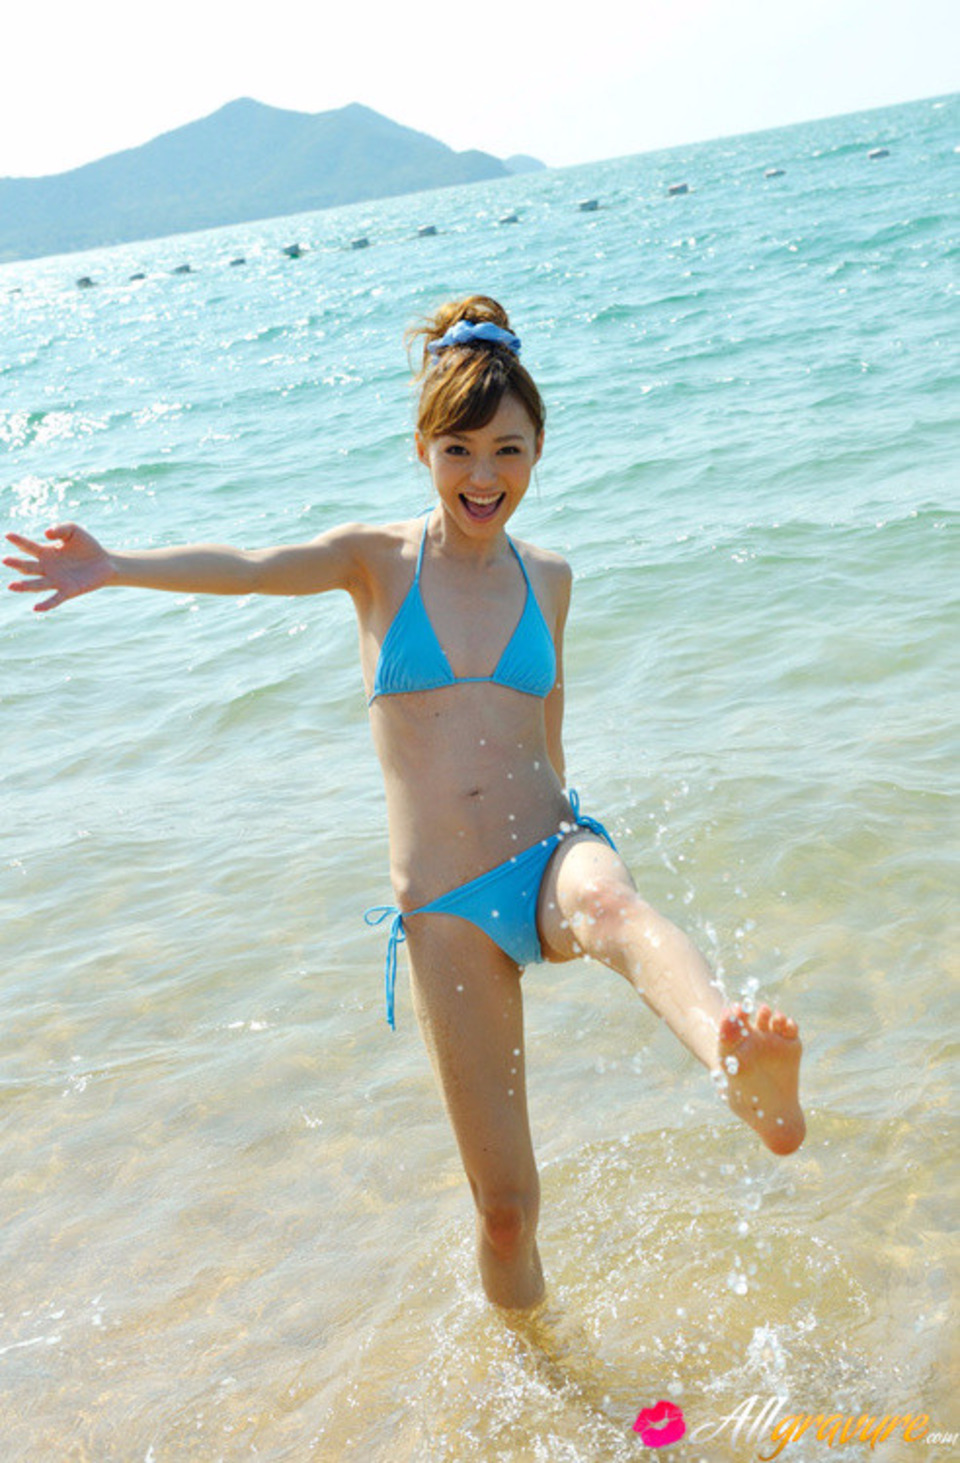 Aino Kishi In Bikini